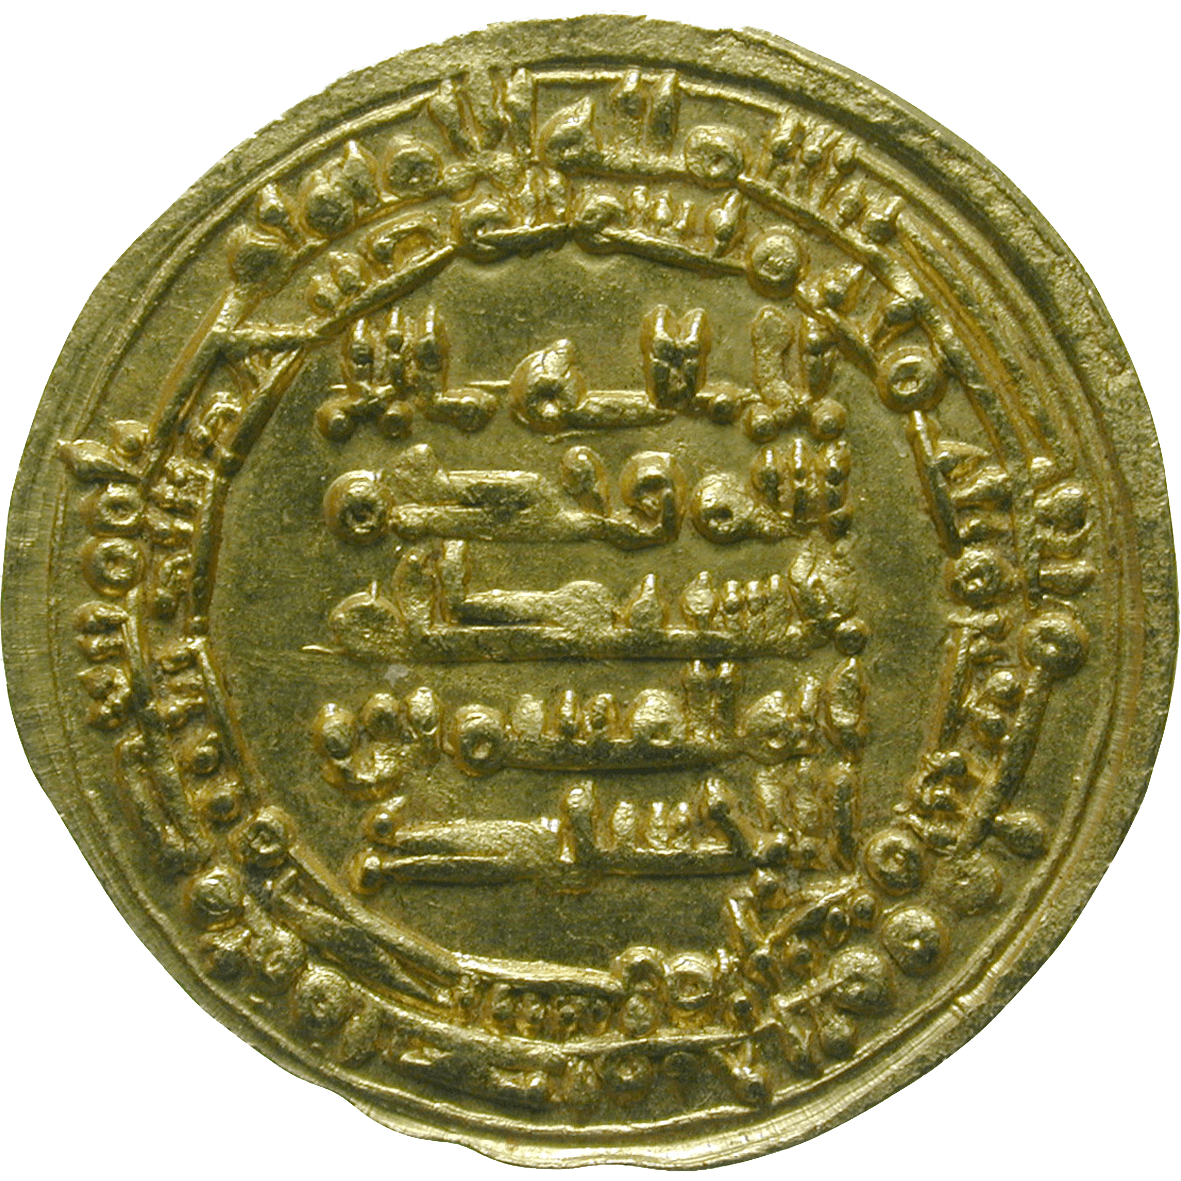 Abbasid Empire, Egypt, Ikhshidid Dynasty, Abul Qasim Ungur, Dinar 334 AH (obverse)